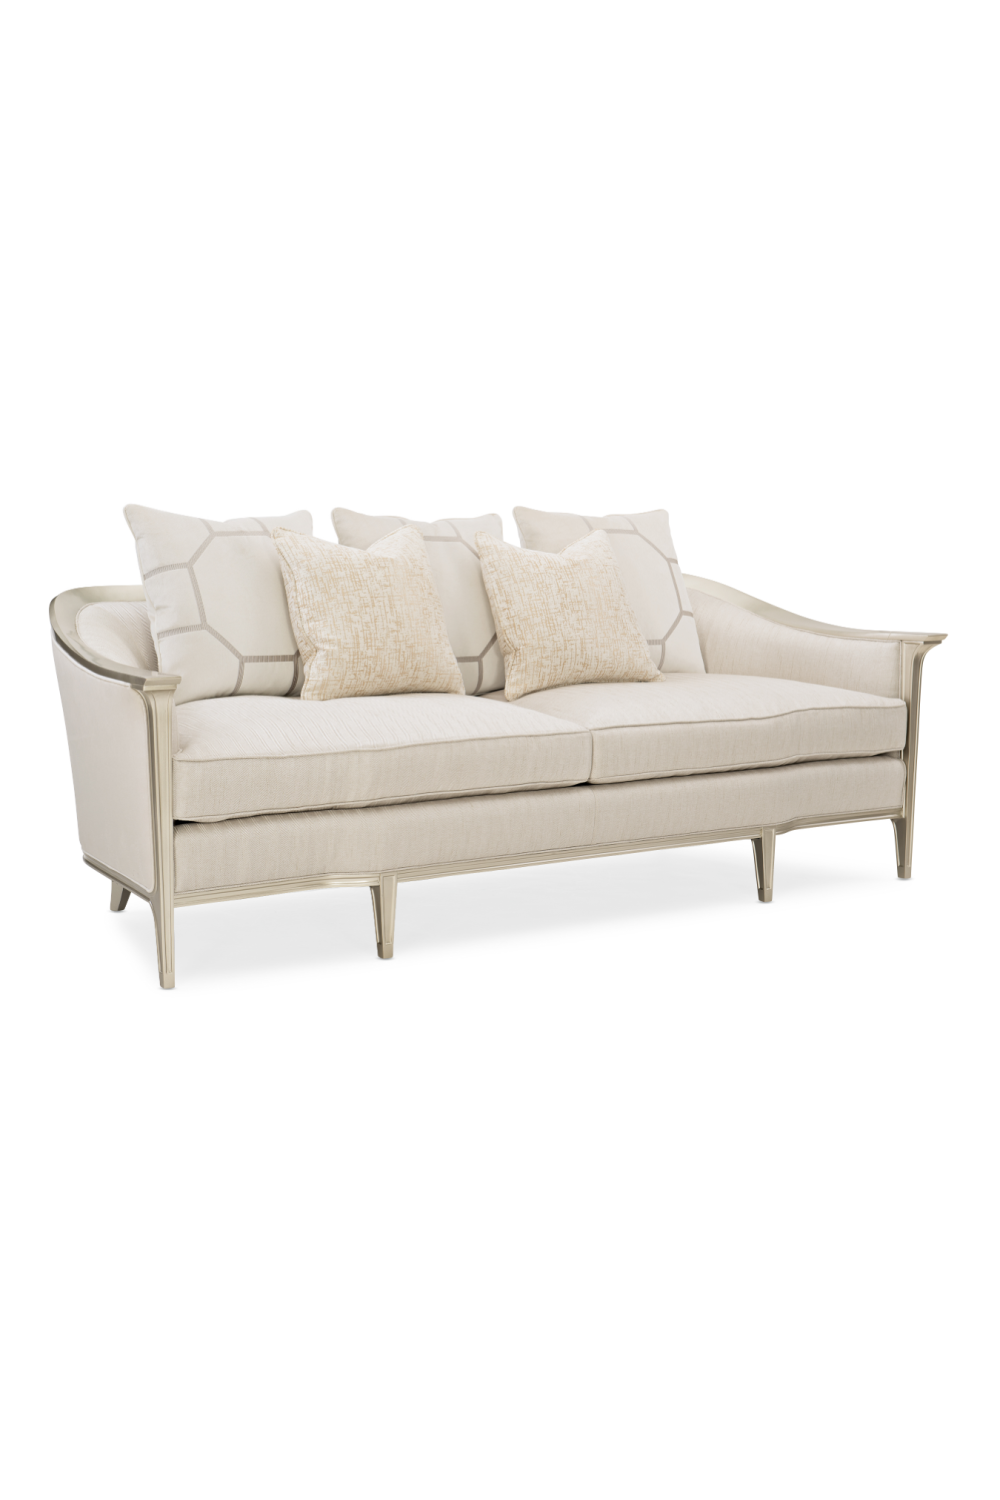 Cream Sofa With Cushions | Caracole Eaves Drop | Oroa.com